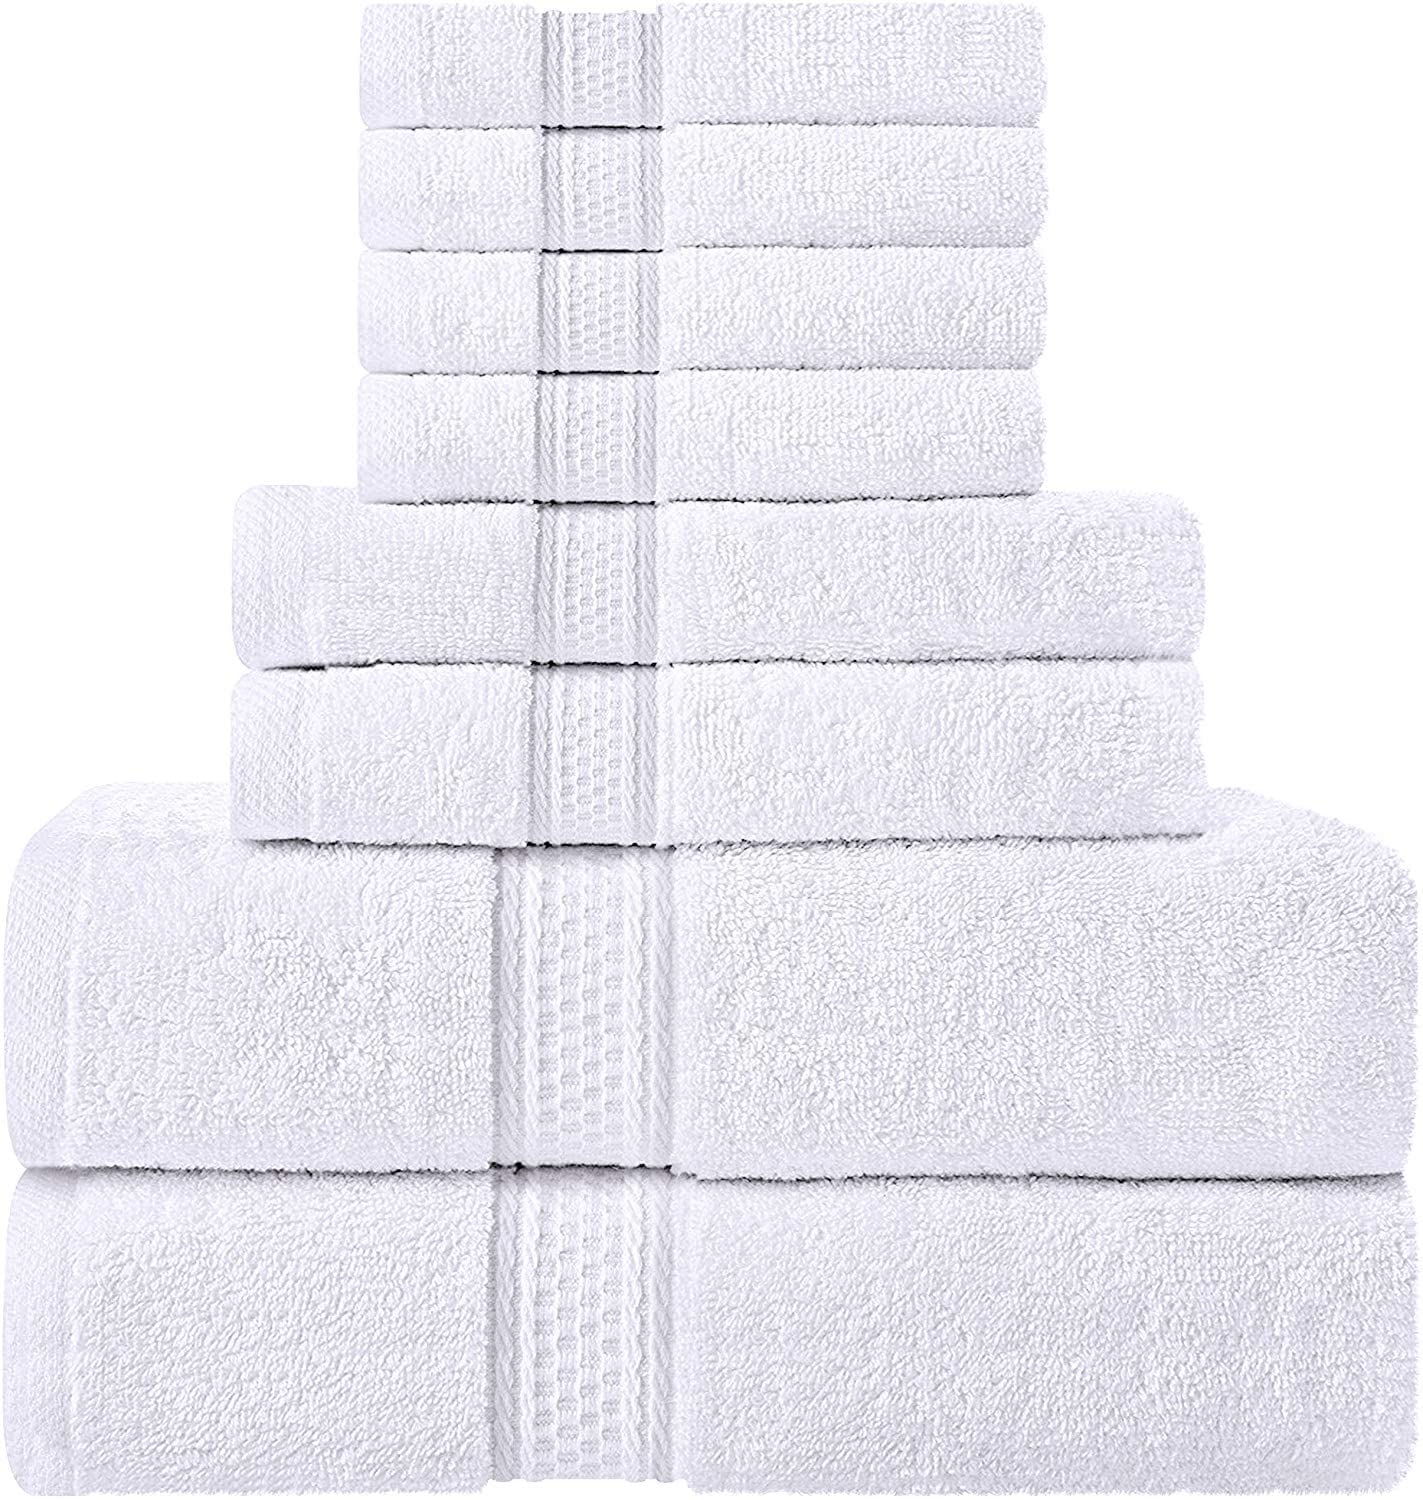 Utopia Towels Grey Towel Set, 2 Bath Towels, 2 Hand Towels, and 4